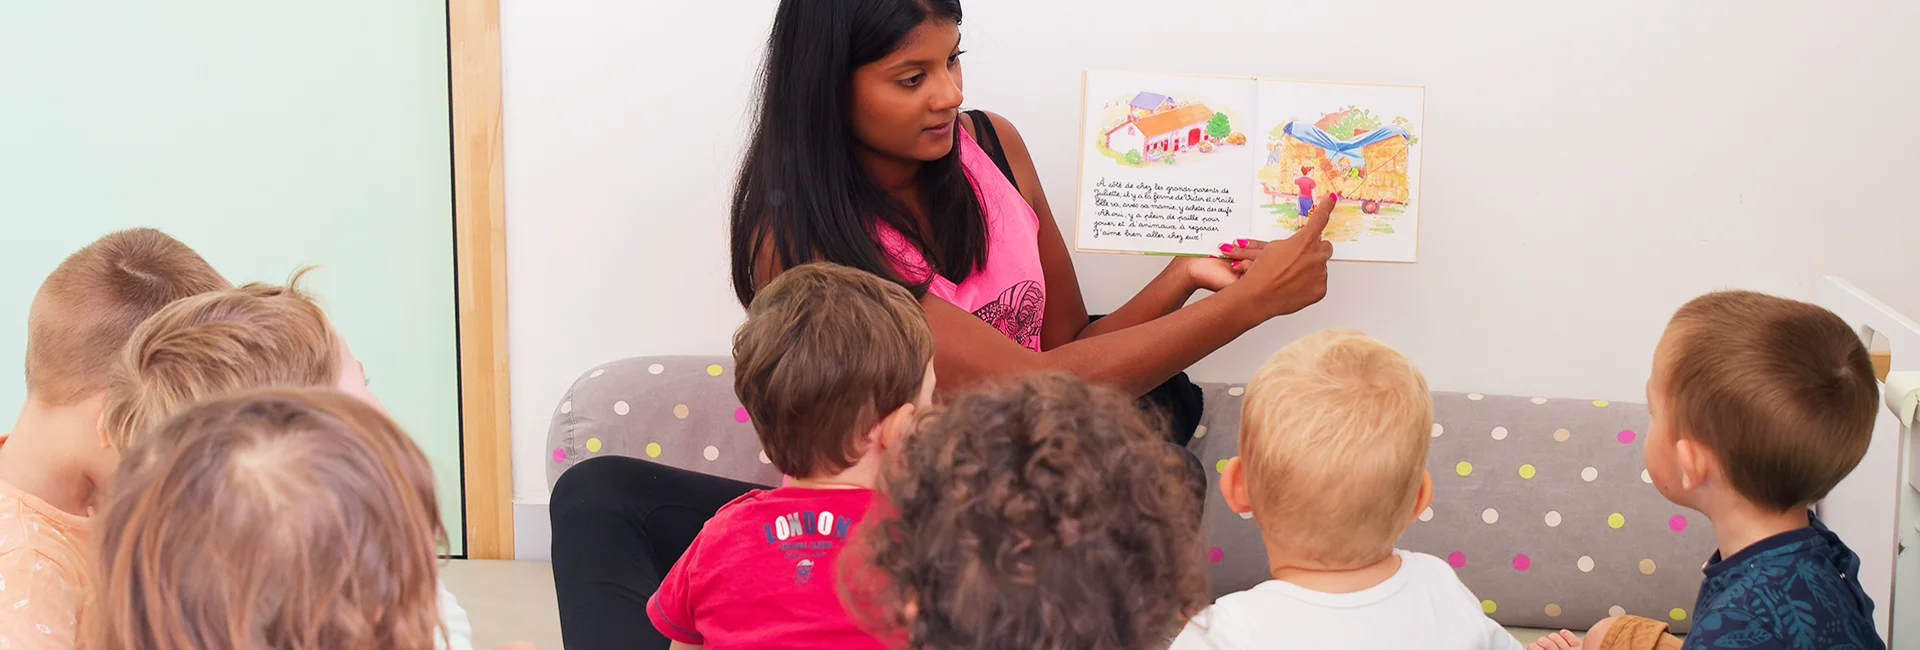 une auxiliaire de puériculture s'occupe d'un groupe d'enfants et les occupe en leur lisant un livre illustré